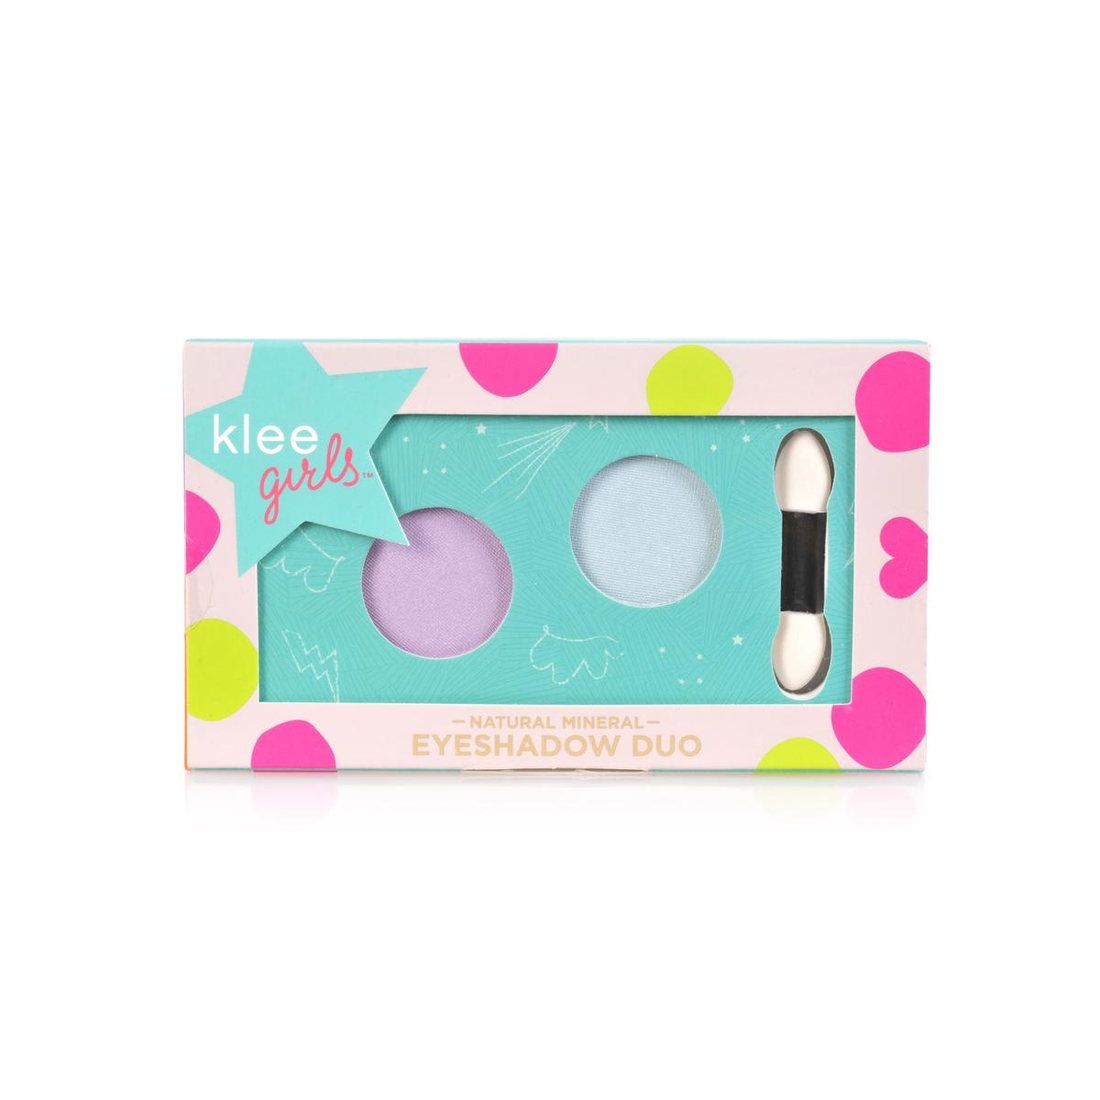 Klee Girls Eyeshadow Duo Palette (Baby Blue+Lavender) 天然礦物雙色眼影盤 (粉藍色+紫色)